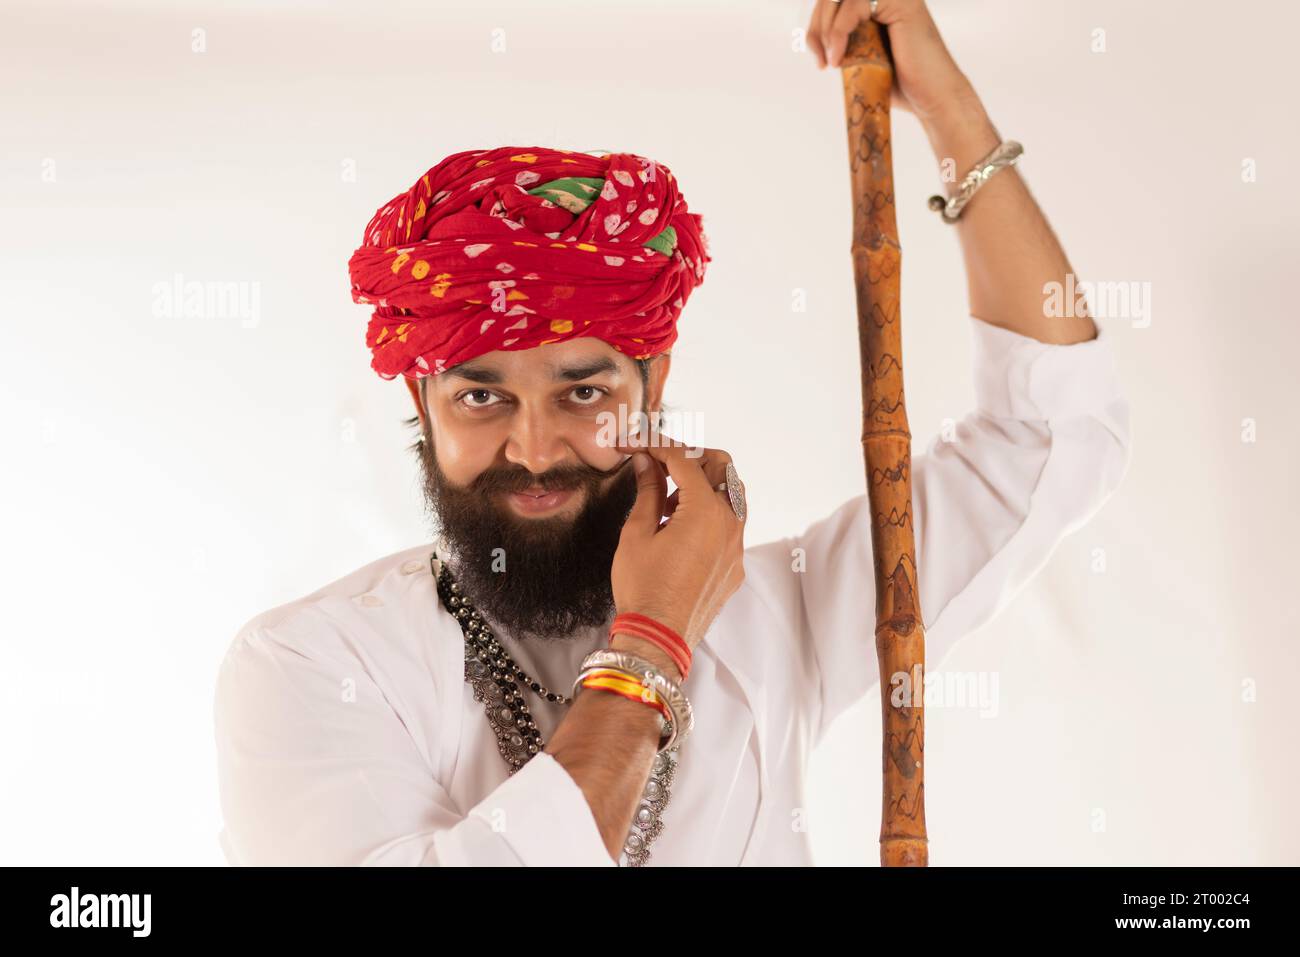 Nahporträt eines jungen Rajasthani-Mannes, der vor weißem Hintergrund steht Stockfoto